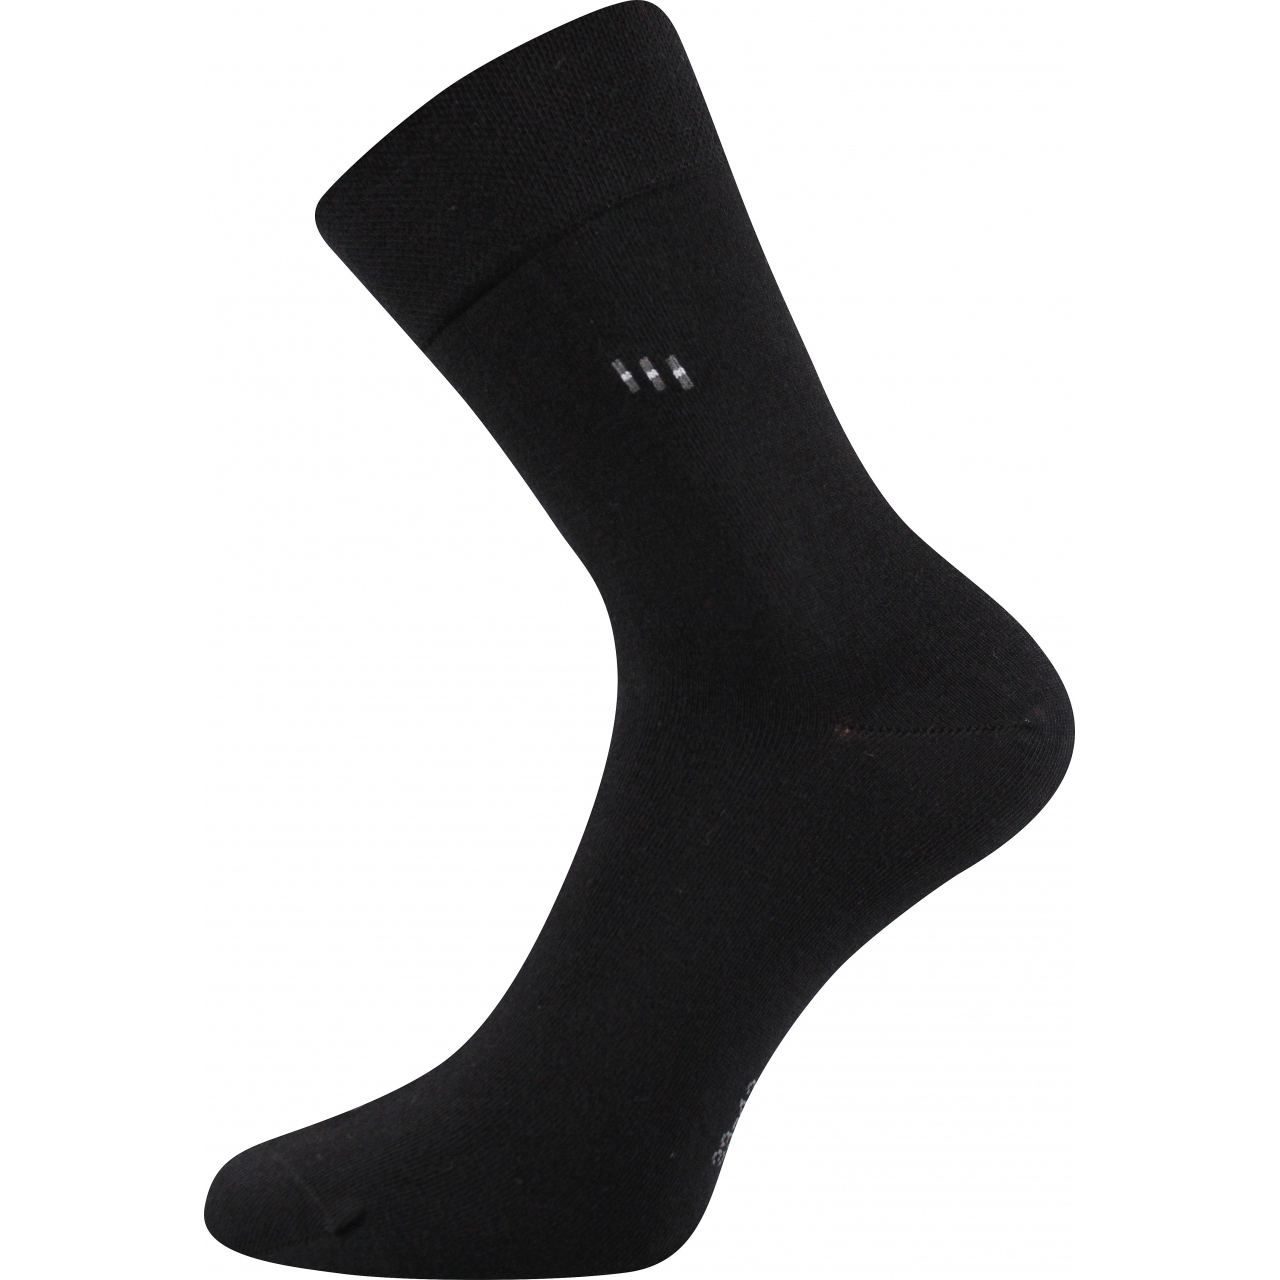 Ponožky pánské společenské Lonka Dipool - černé, 47-50